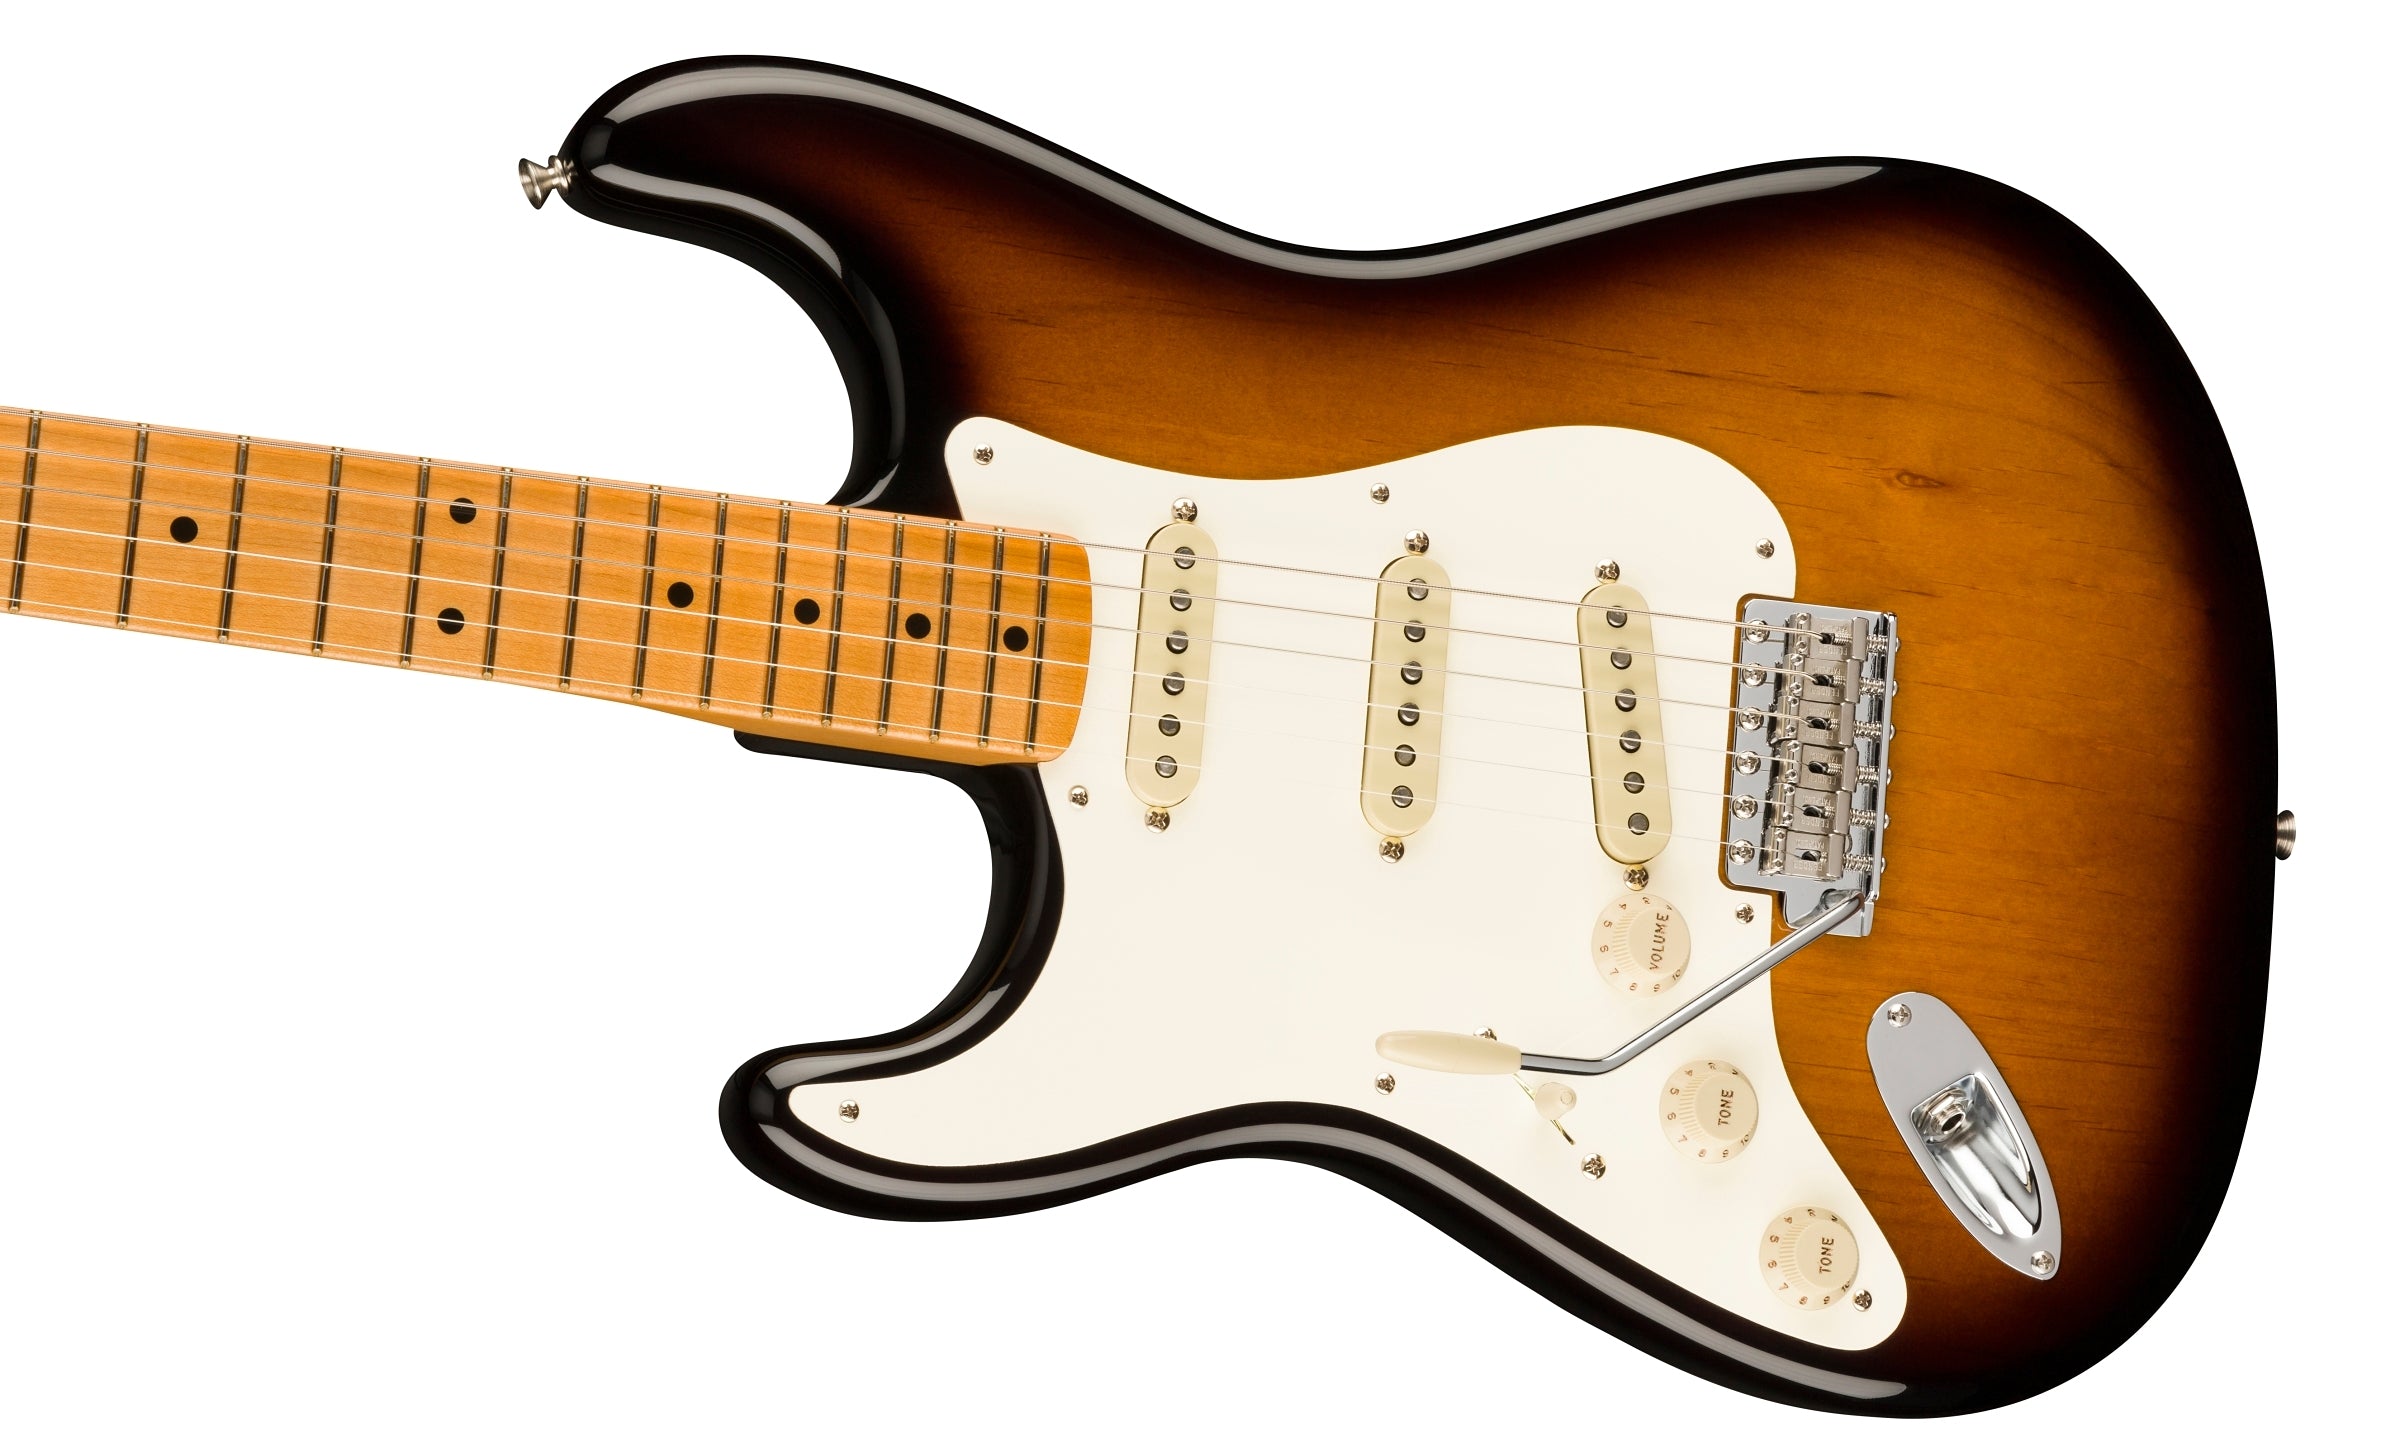 Fender American Vintage II 1957 Stratocaster Left-Handed, 2-Color Sunburst